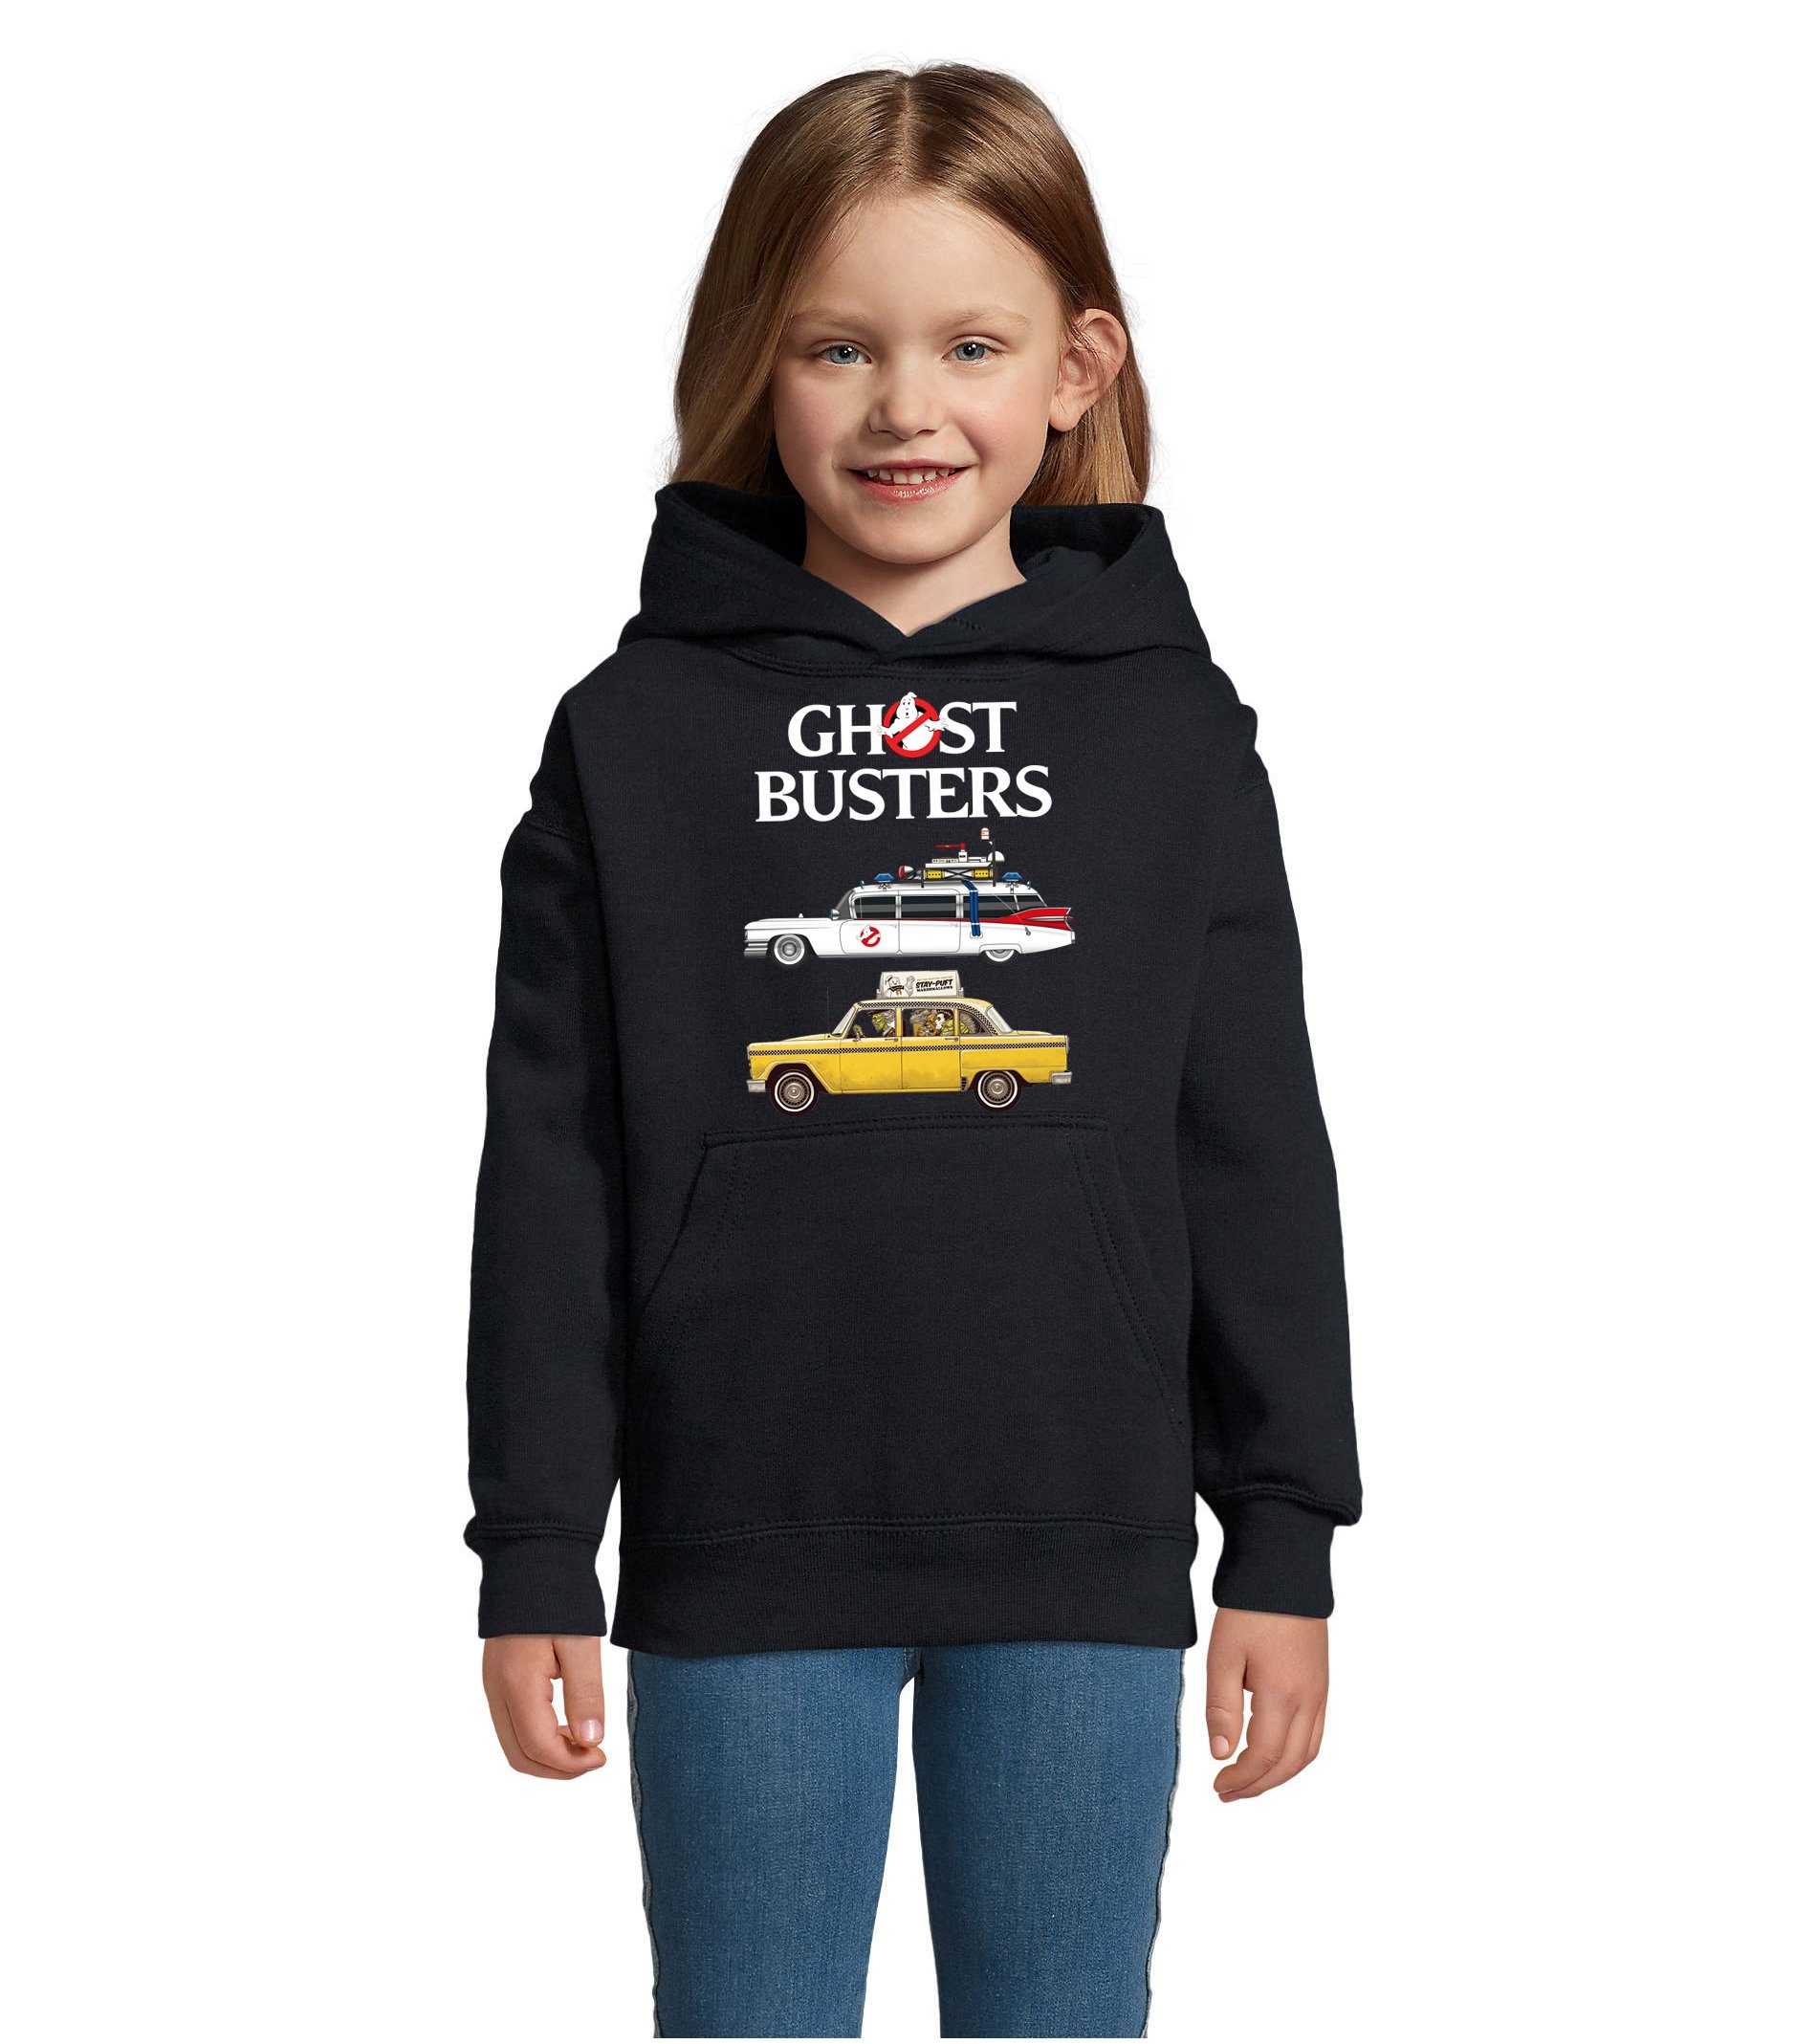 Blondie & Brownie Hoodie Kinder Ghostbusters Cars Auto Geisterjäger Geister Film Ghost mit Kapuze Navyblau